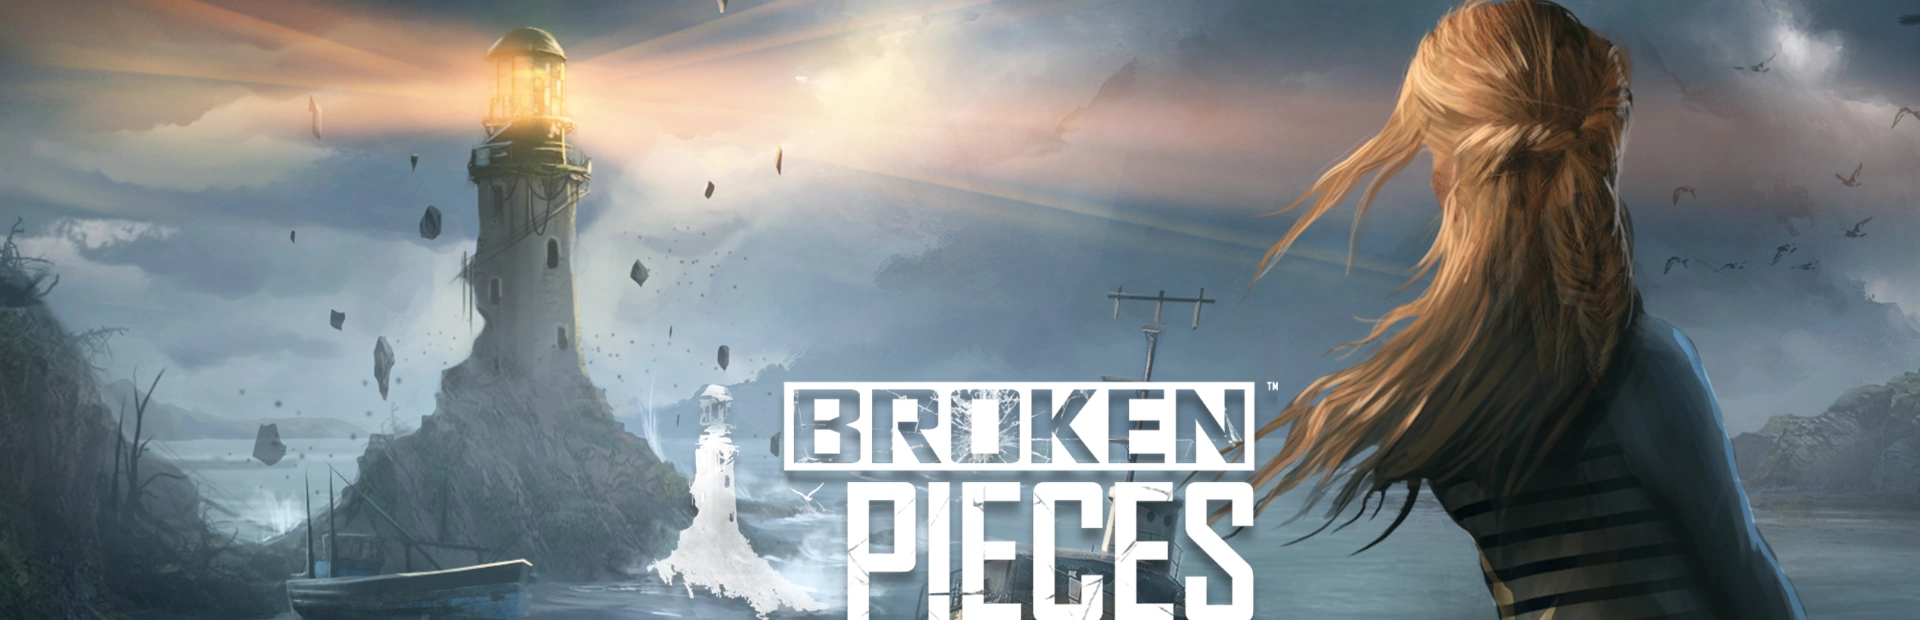 دانلود بازی Broken Pieces برای کامپیوتر | گیمباتو